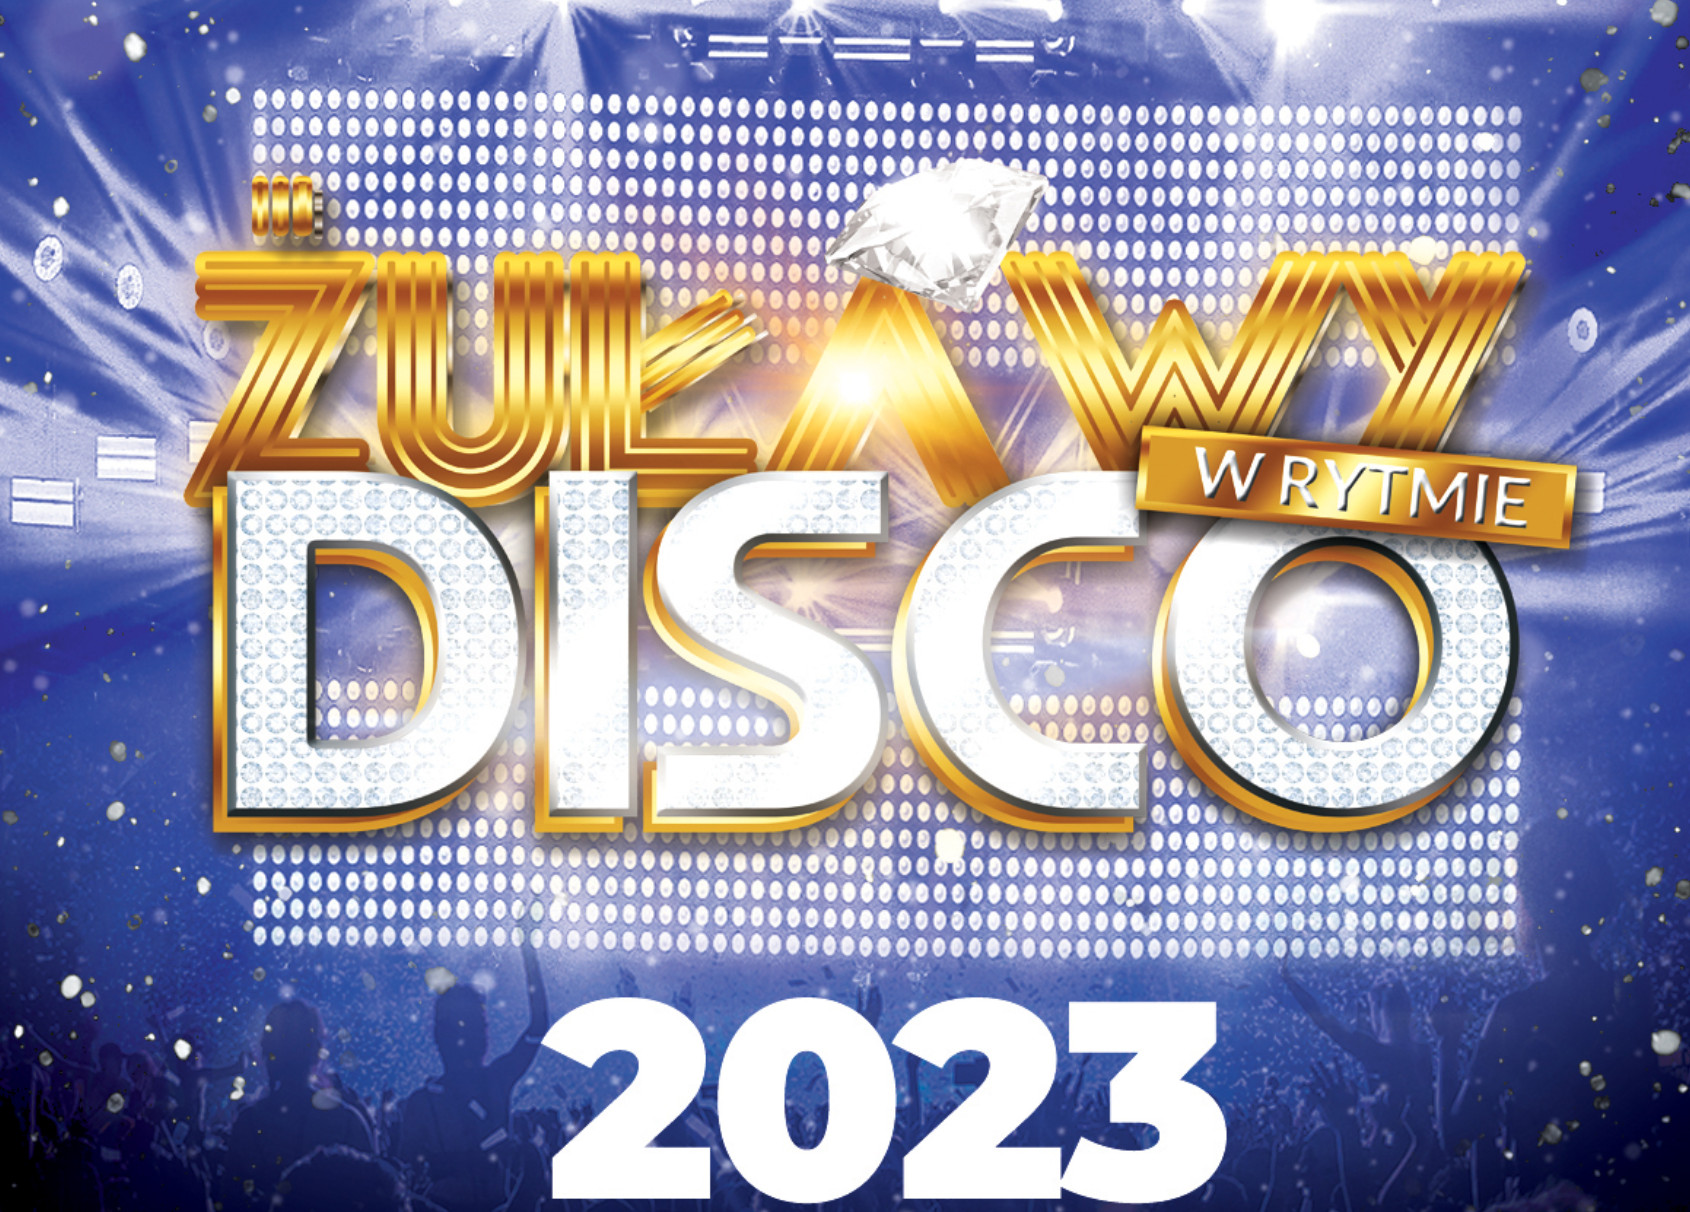 Festiwal Żuławy w Rytmie Disco 2023 - najważniejsze informacje, kto wystąpi, bilety